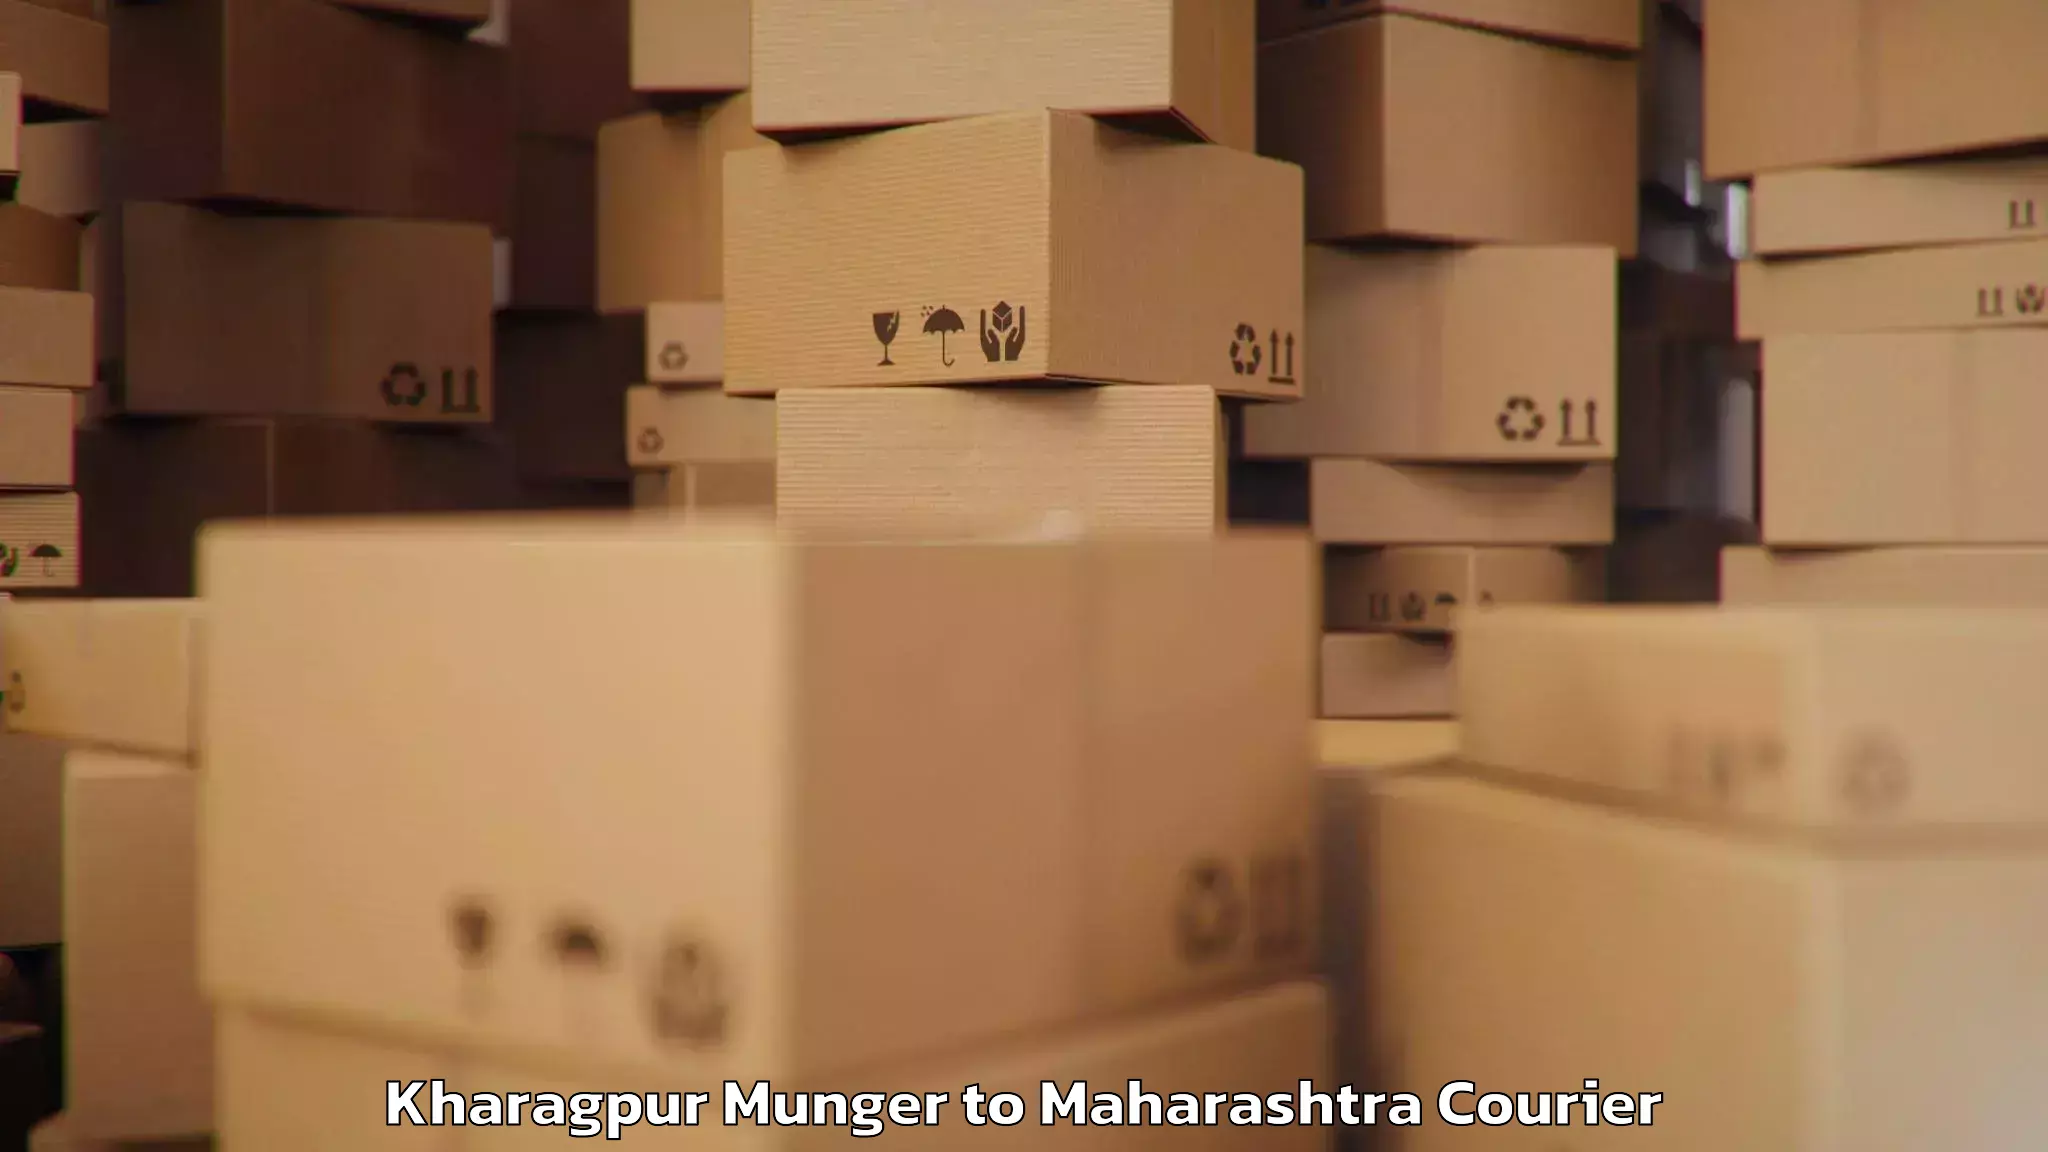 Urban luggage shipping Kharagpur Munger to DY Patil Vidyapeeth Mumbai